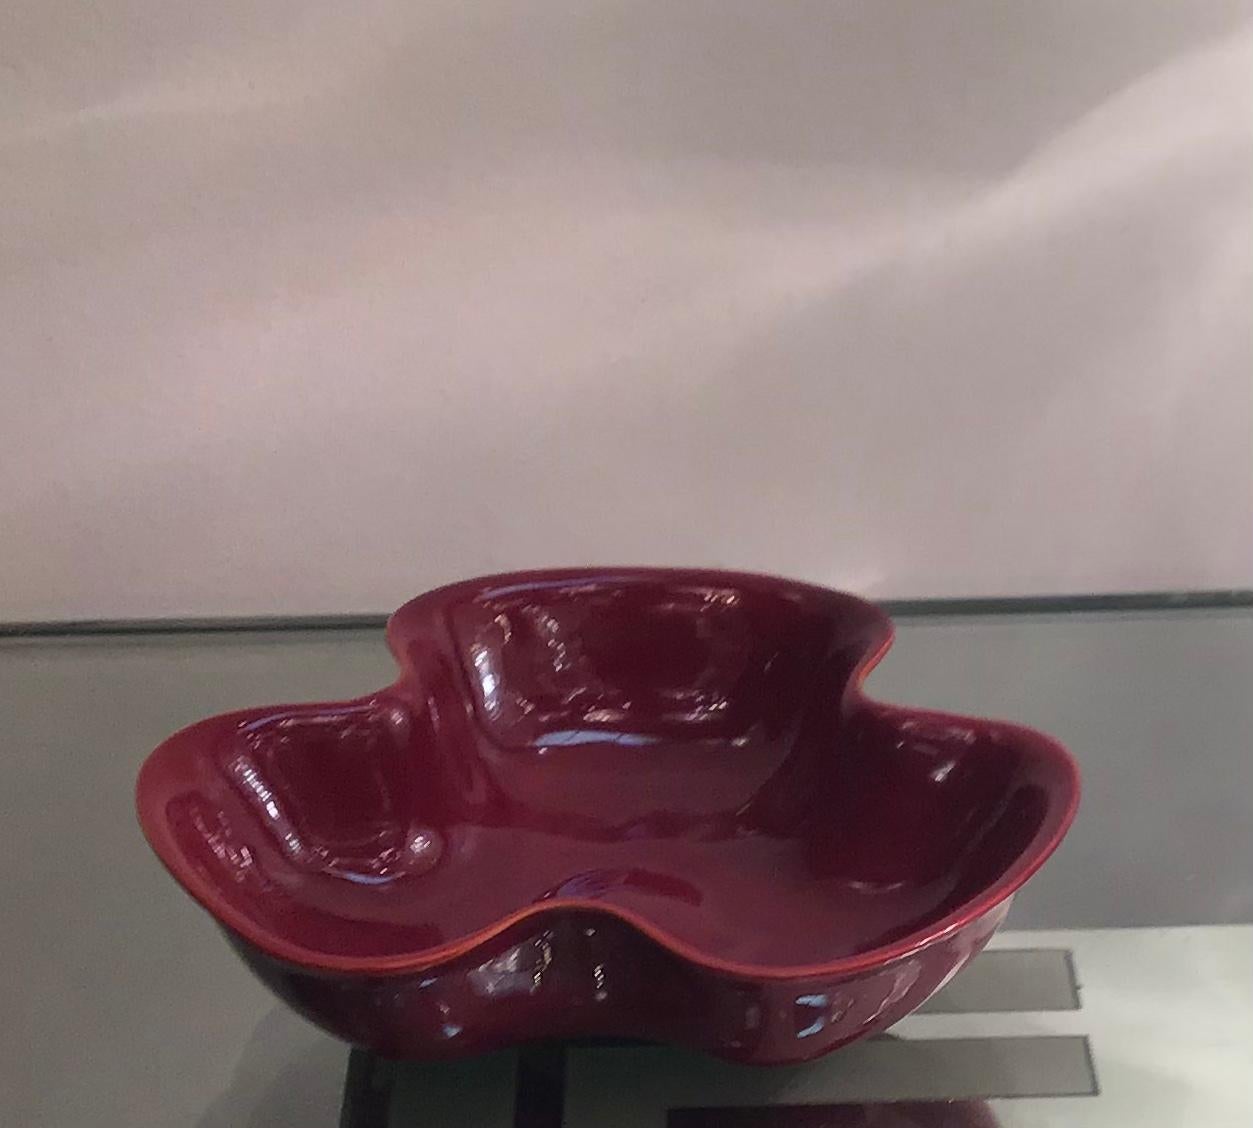 Gio ‘ Ponti “Centerpiece “ ceramic 1950 Italy.